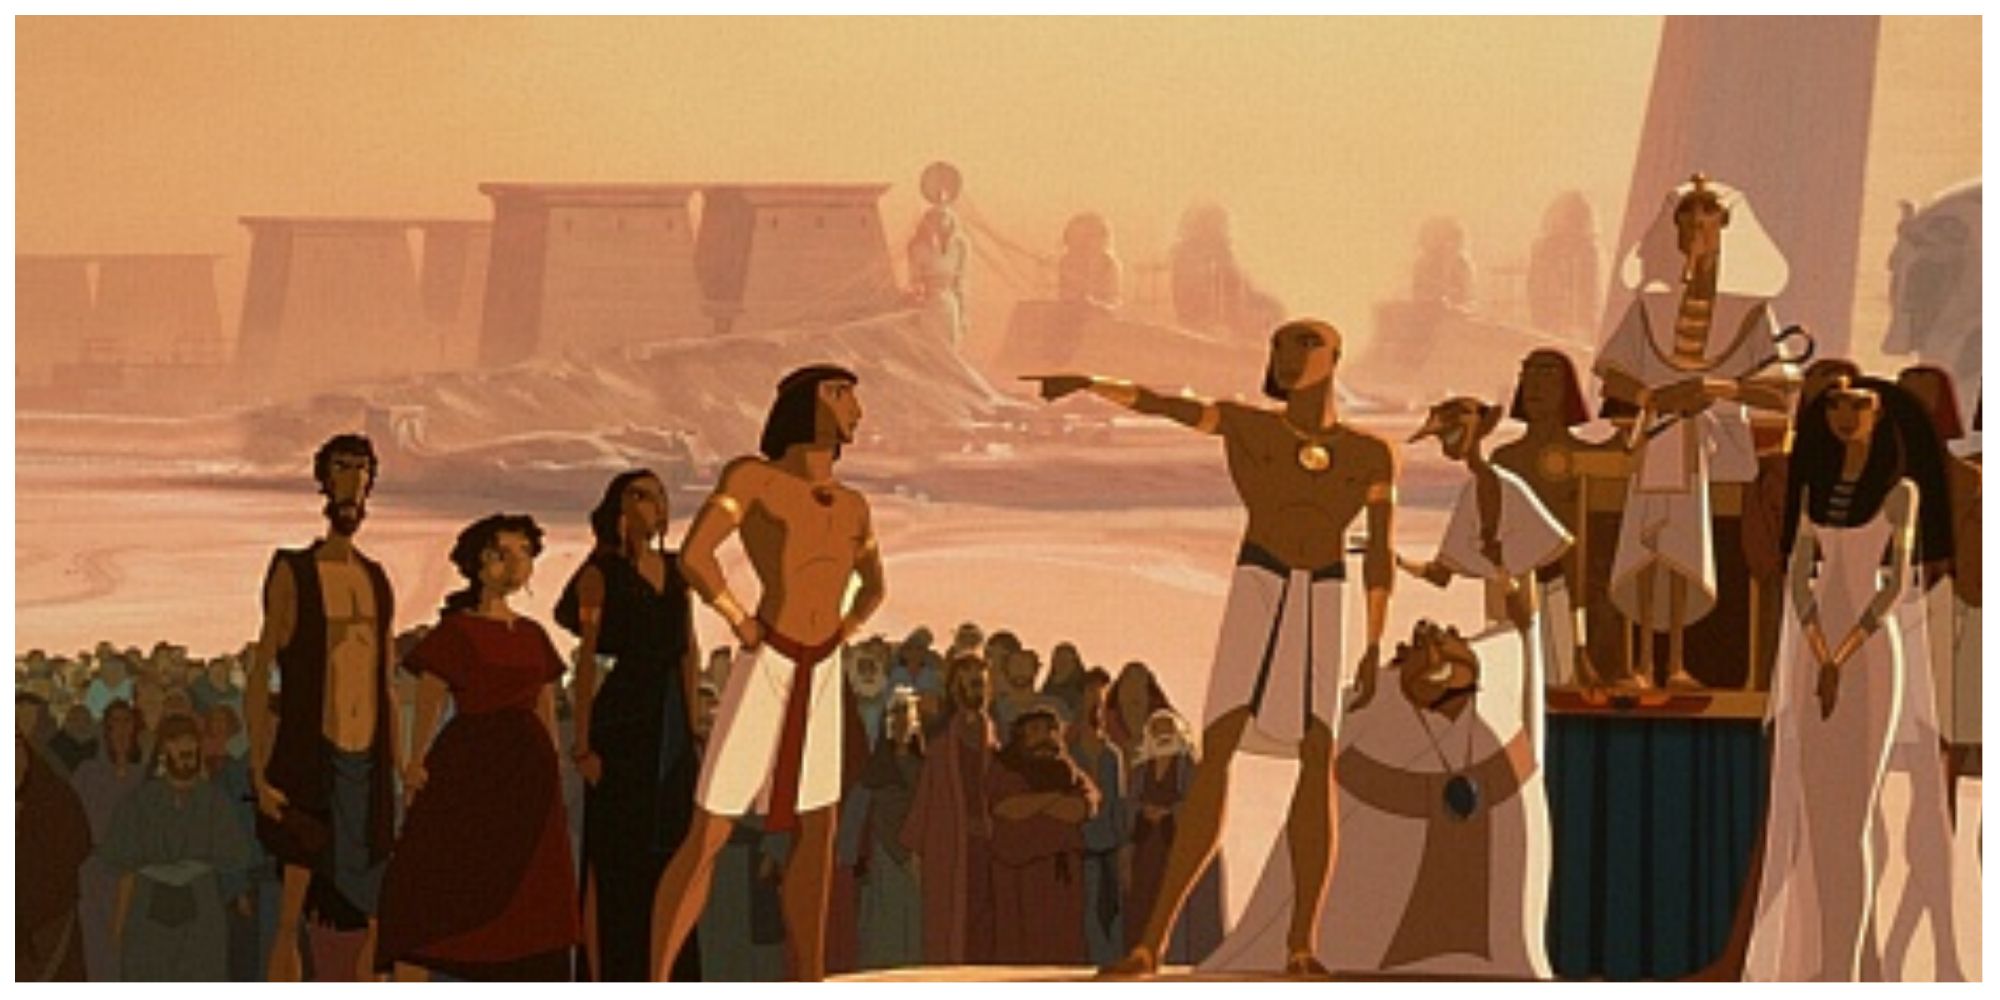 мультфильм принц египта